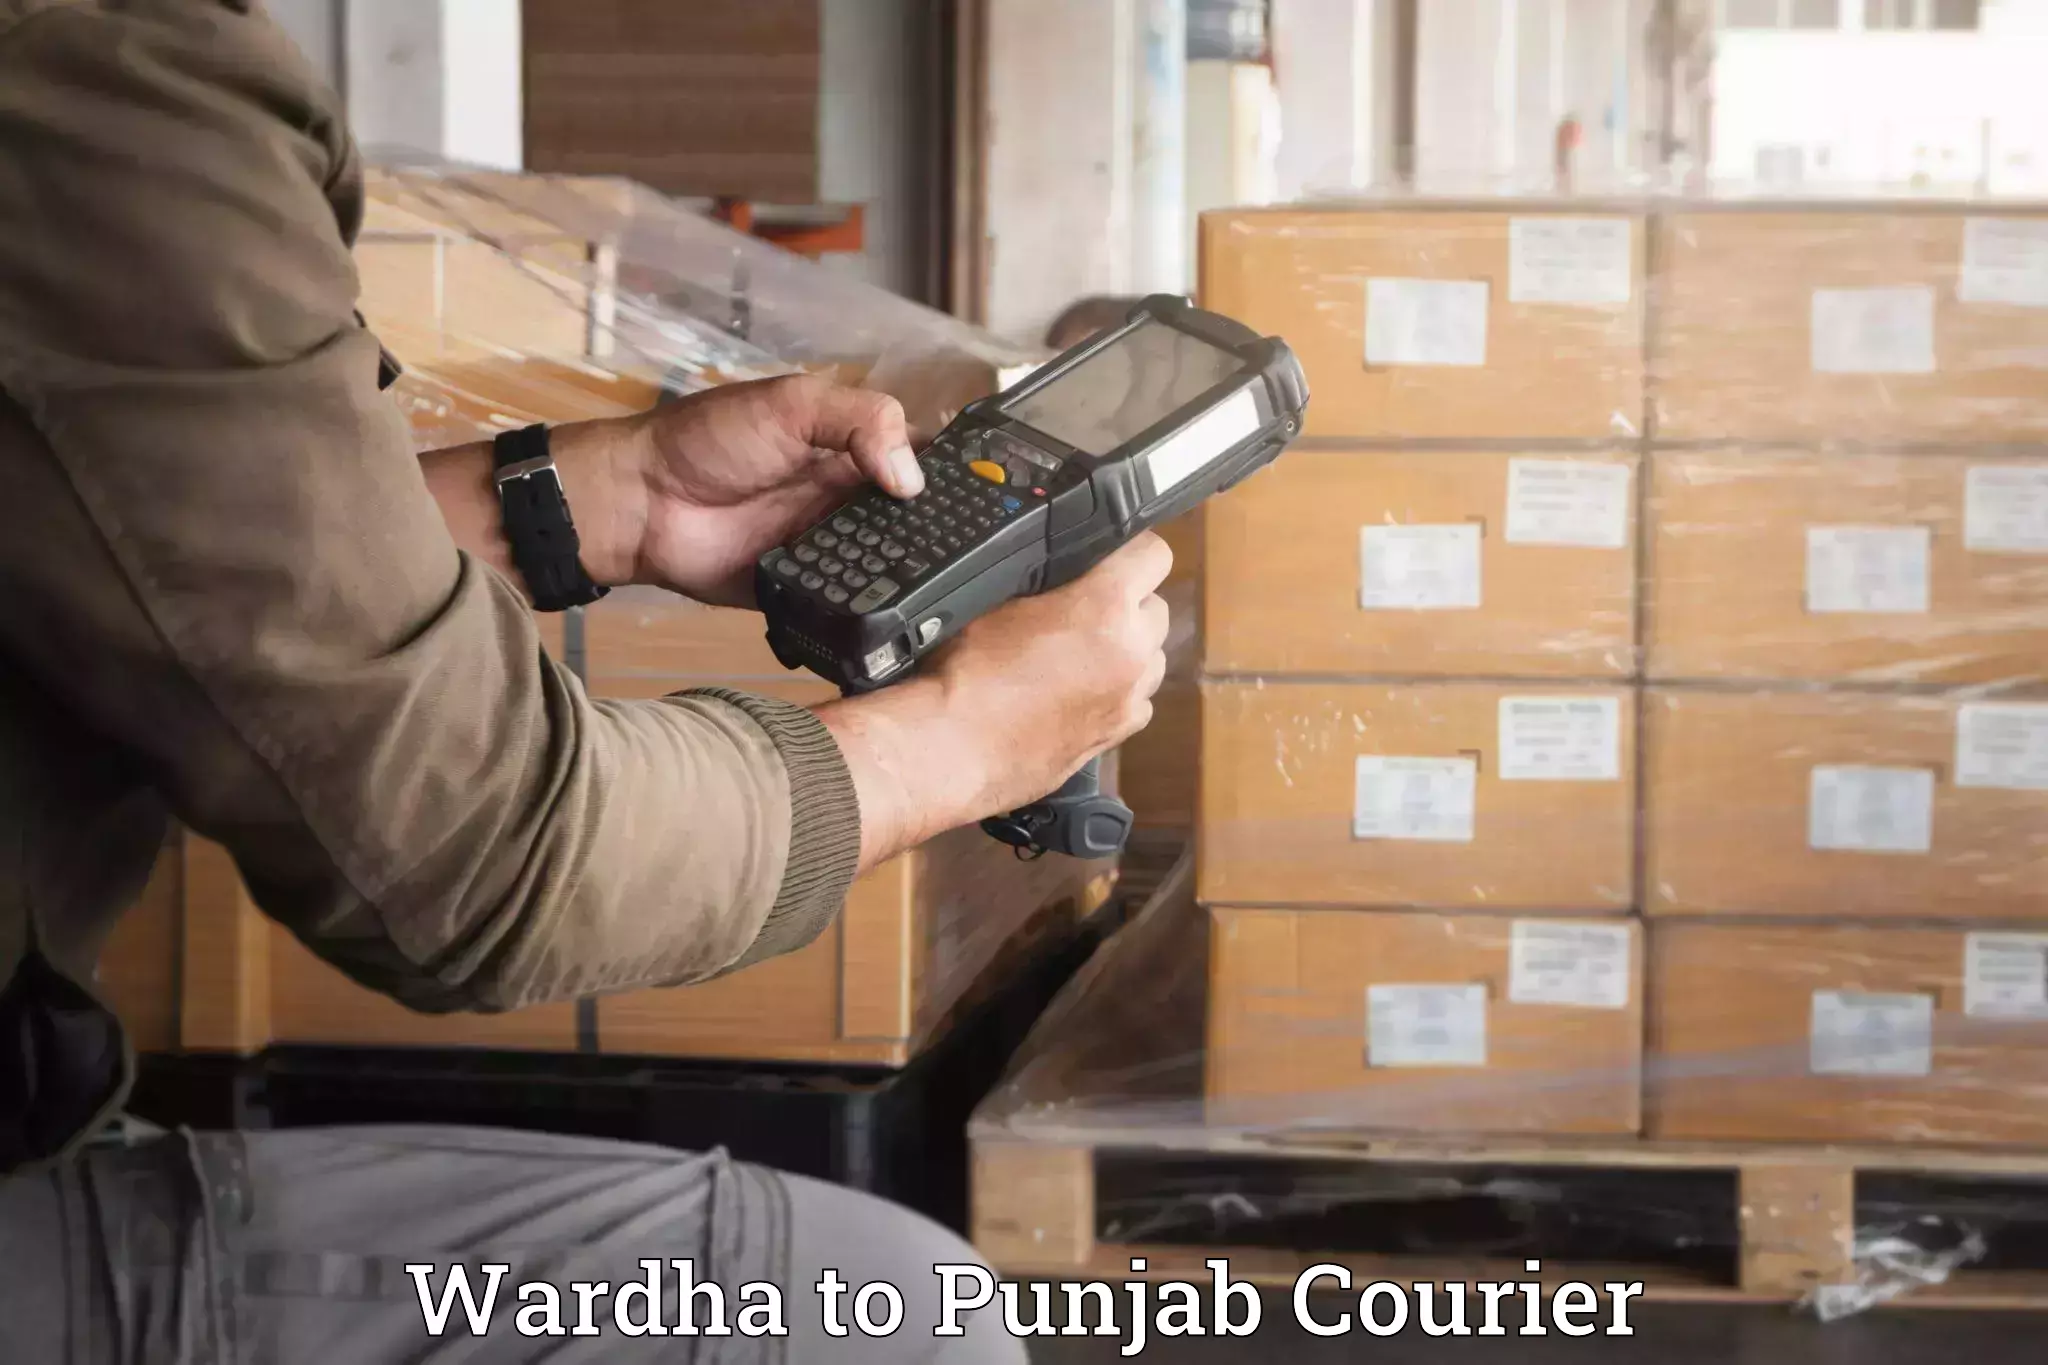 Door-to-door baggage service Wardha to Dinanagar